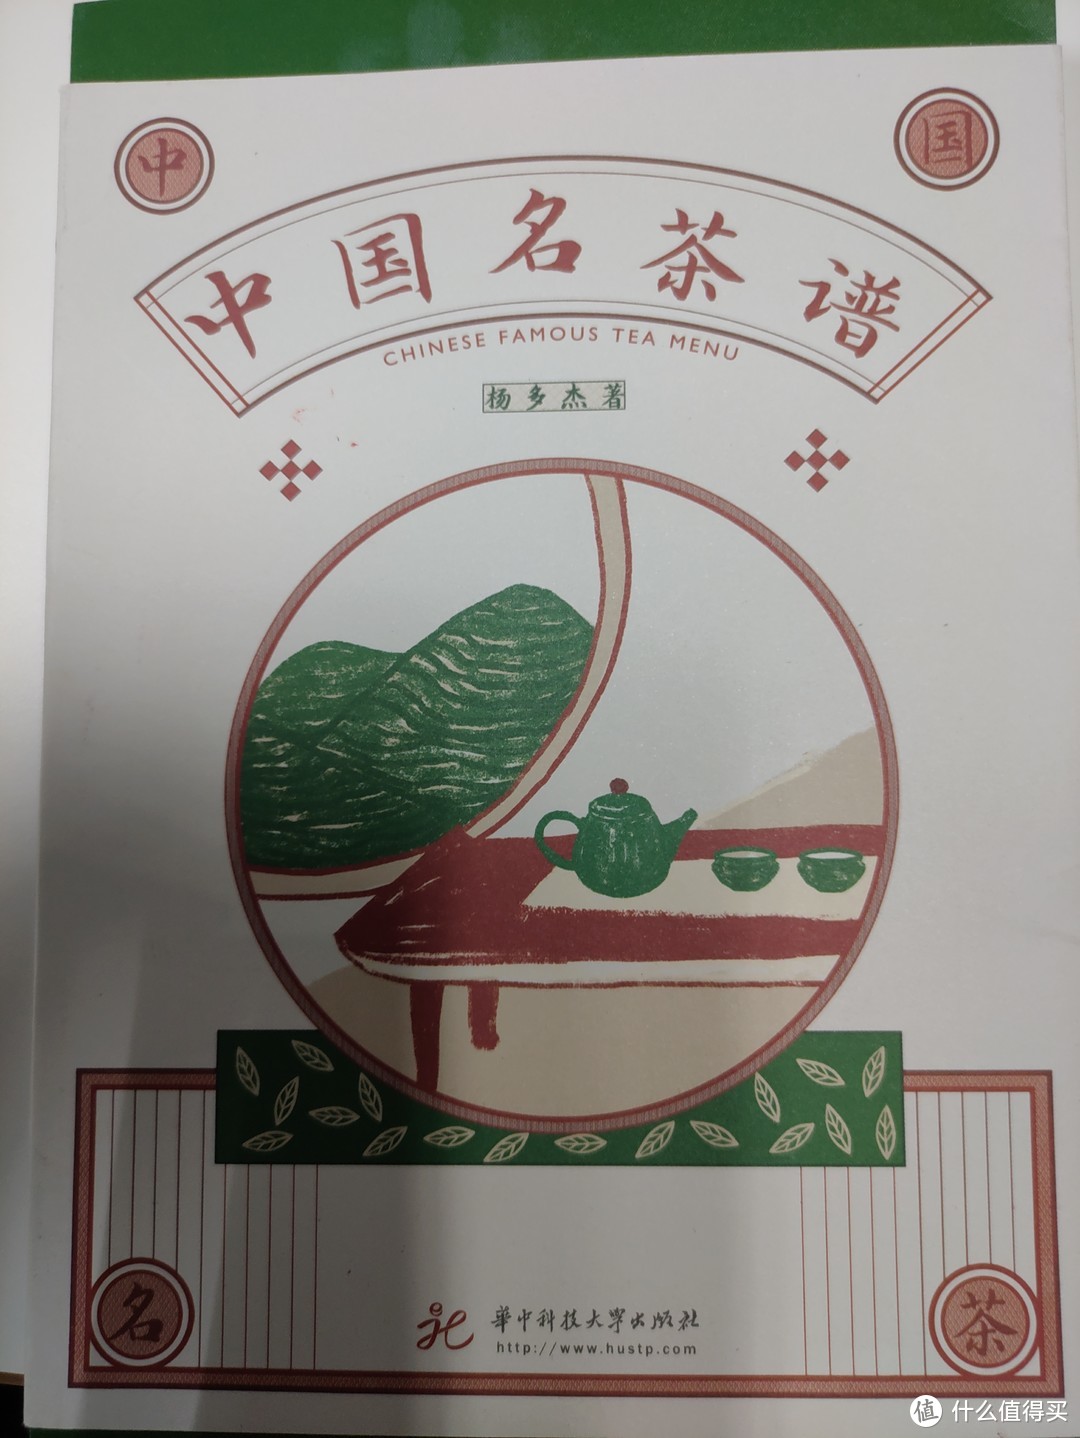 分享一本书 --- 《中国名茶谱》